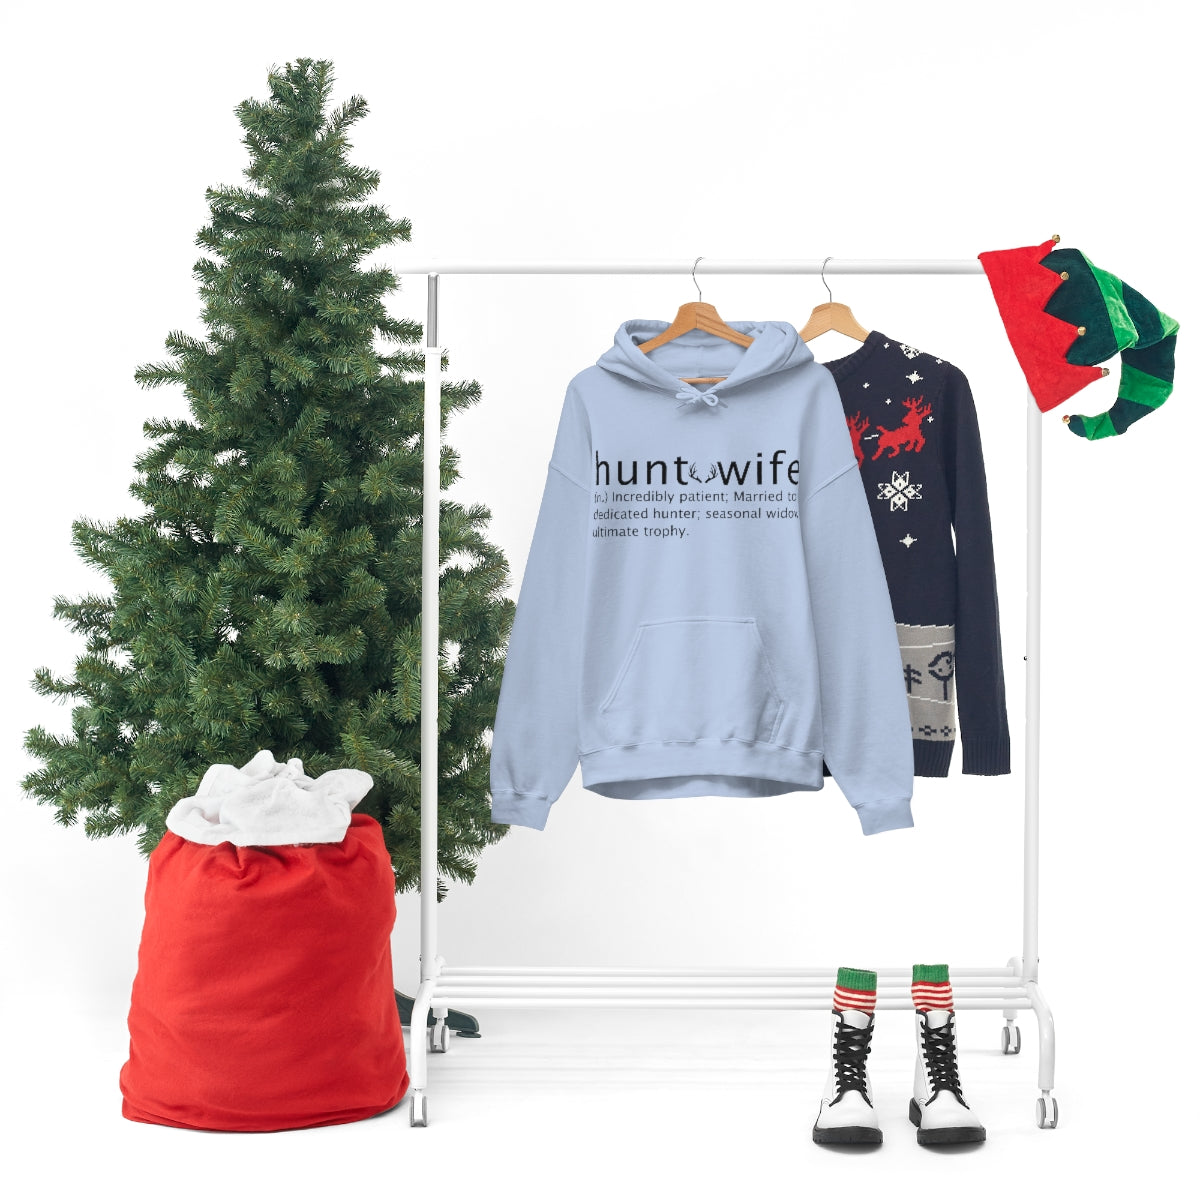 Hunt Wife Unisex Hooded Sweatshirt